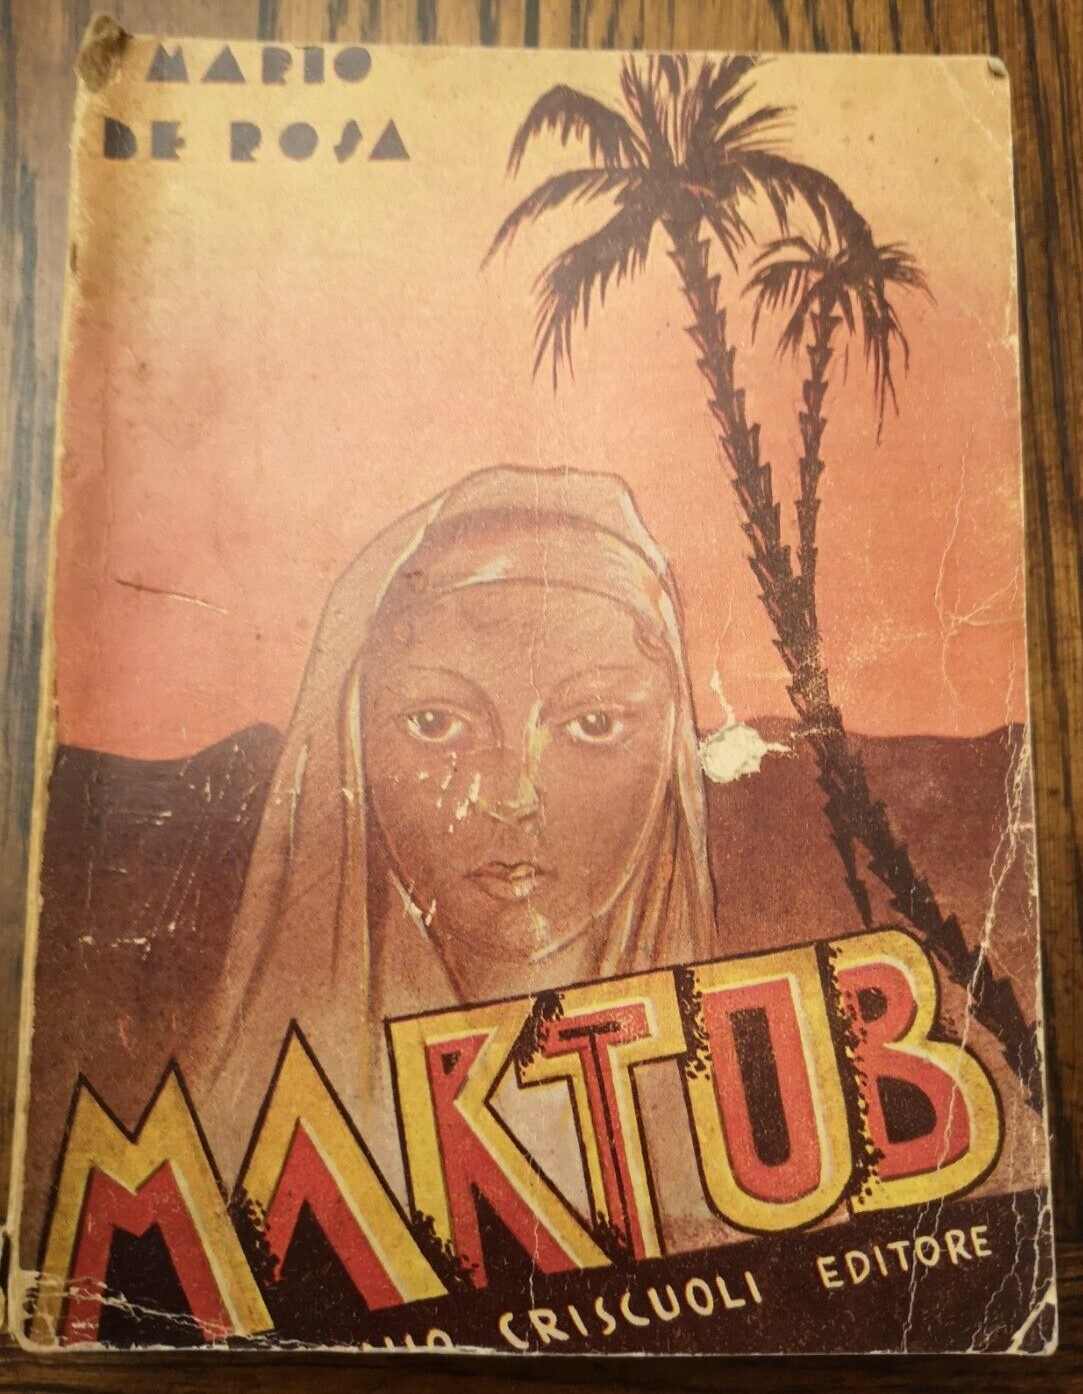 Uno sconosciuto romanzo ‘futurista’ ambientato in Libia: “Maktub!” di Mario De Rosa (Criscuoli, 1935)